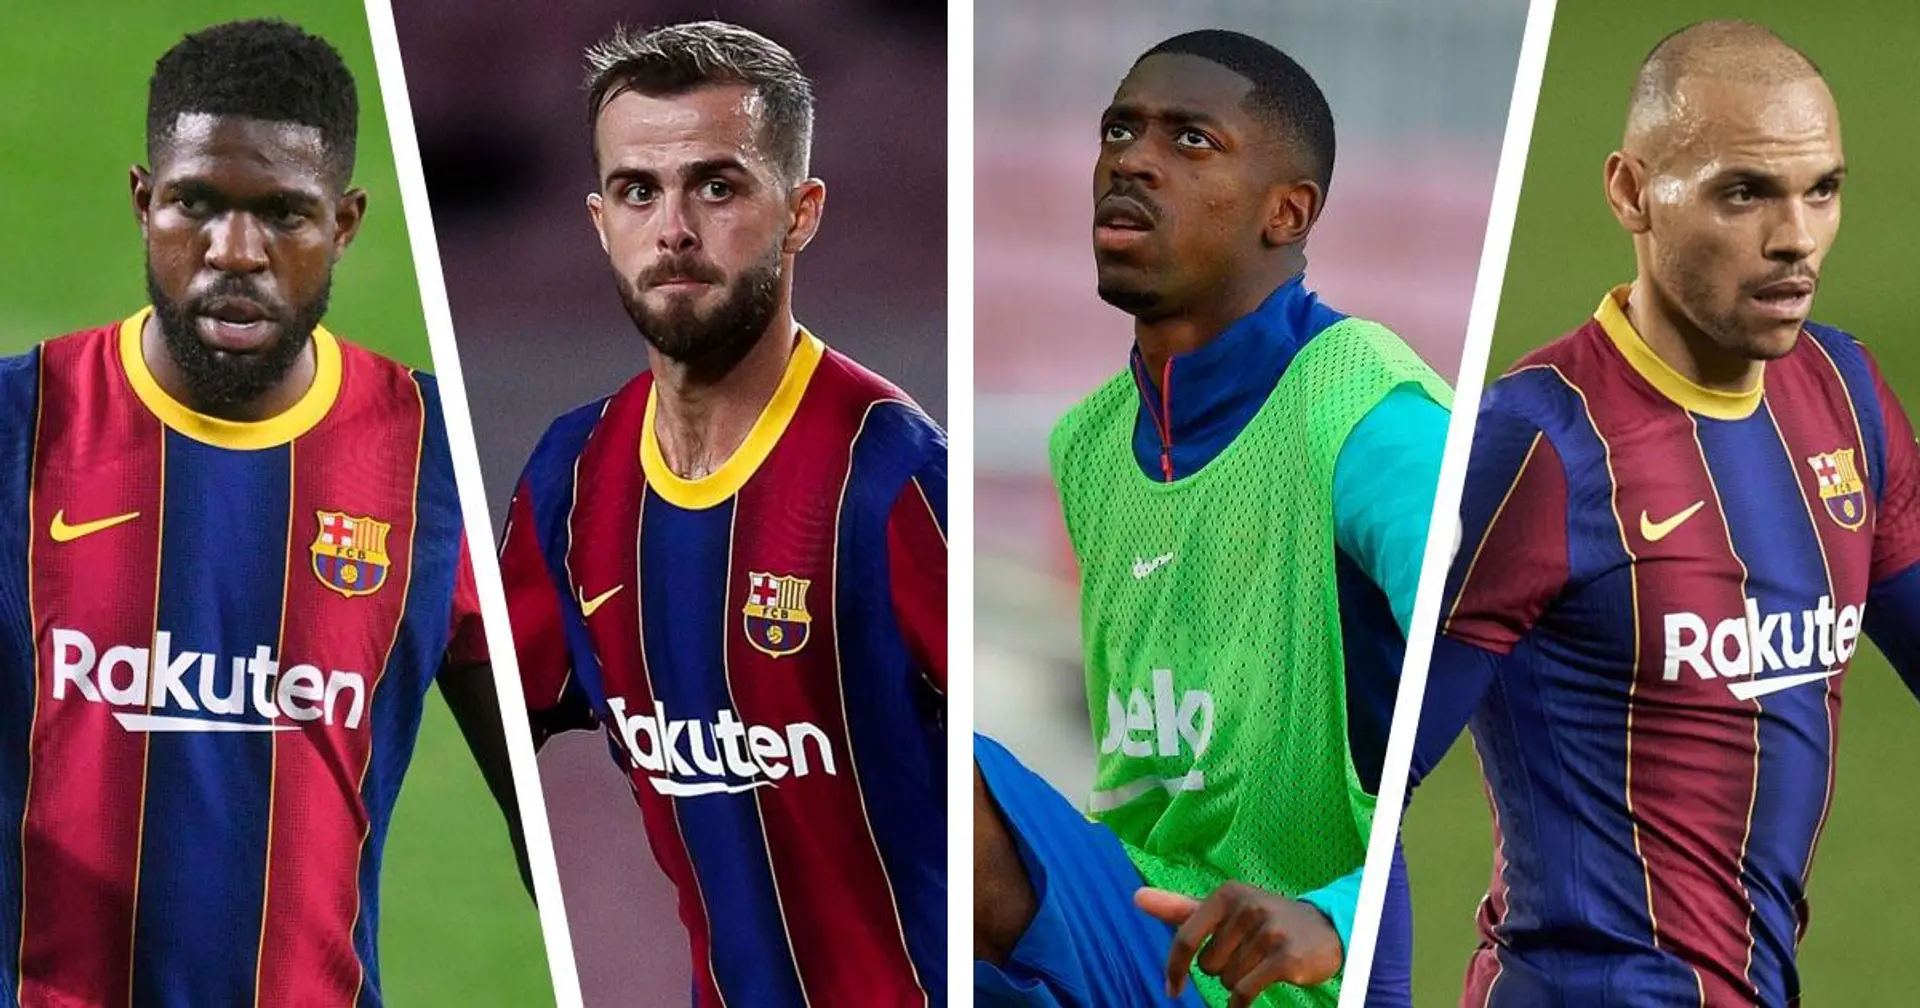 El Barça elige a 6 jugadores para vender ahora mismo, Dembélé y Sergi Roberto siguen en la fila (fiabilidad: 4 estrellas)